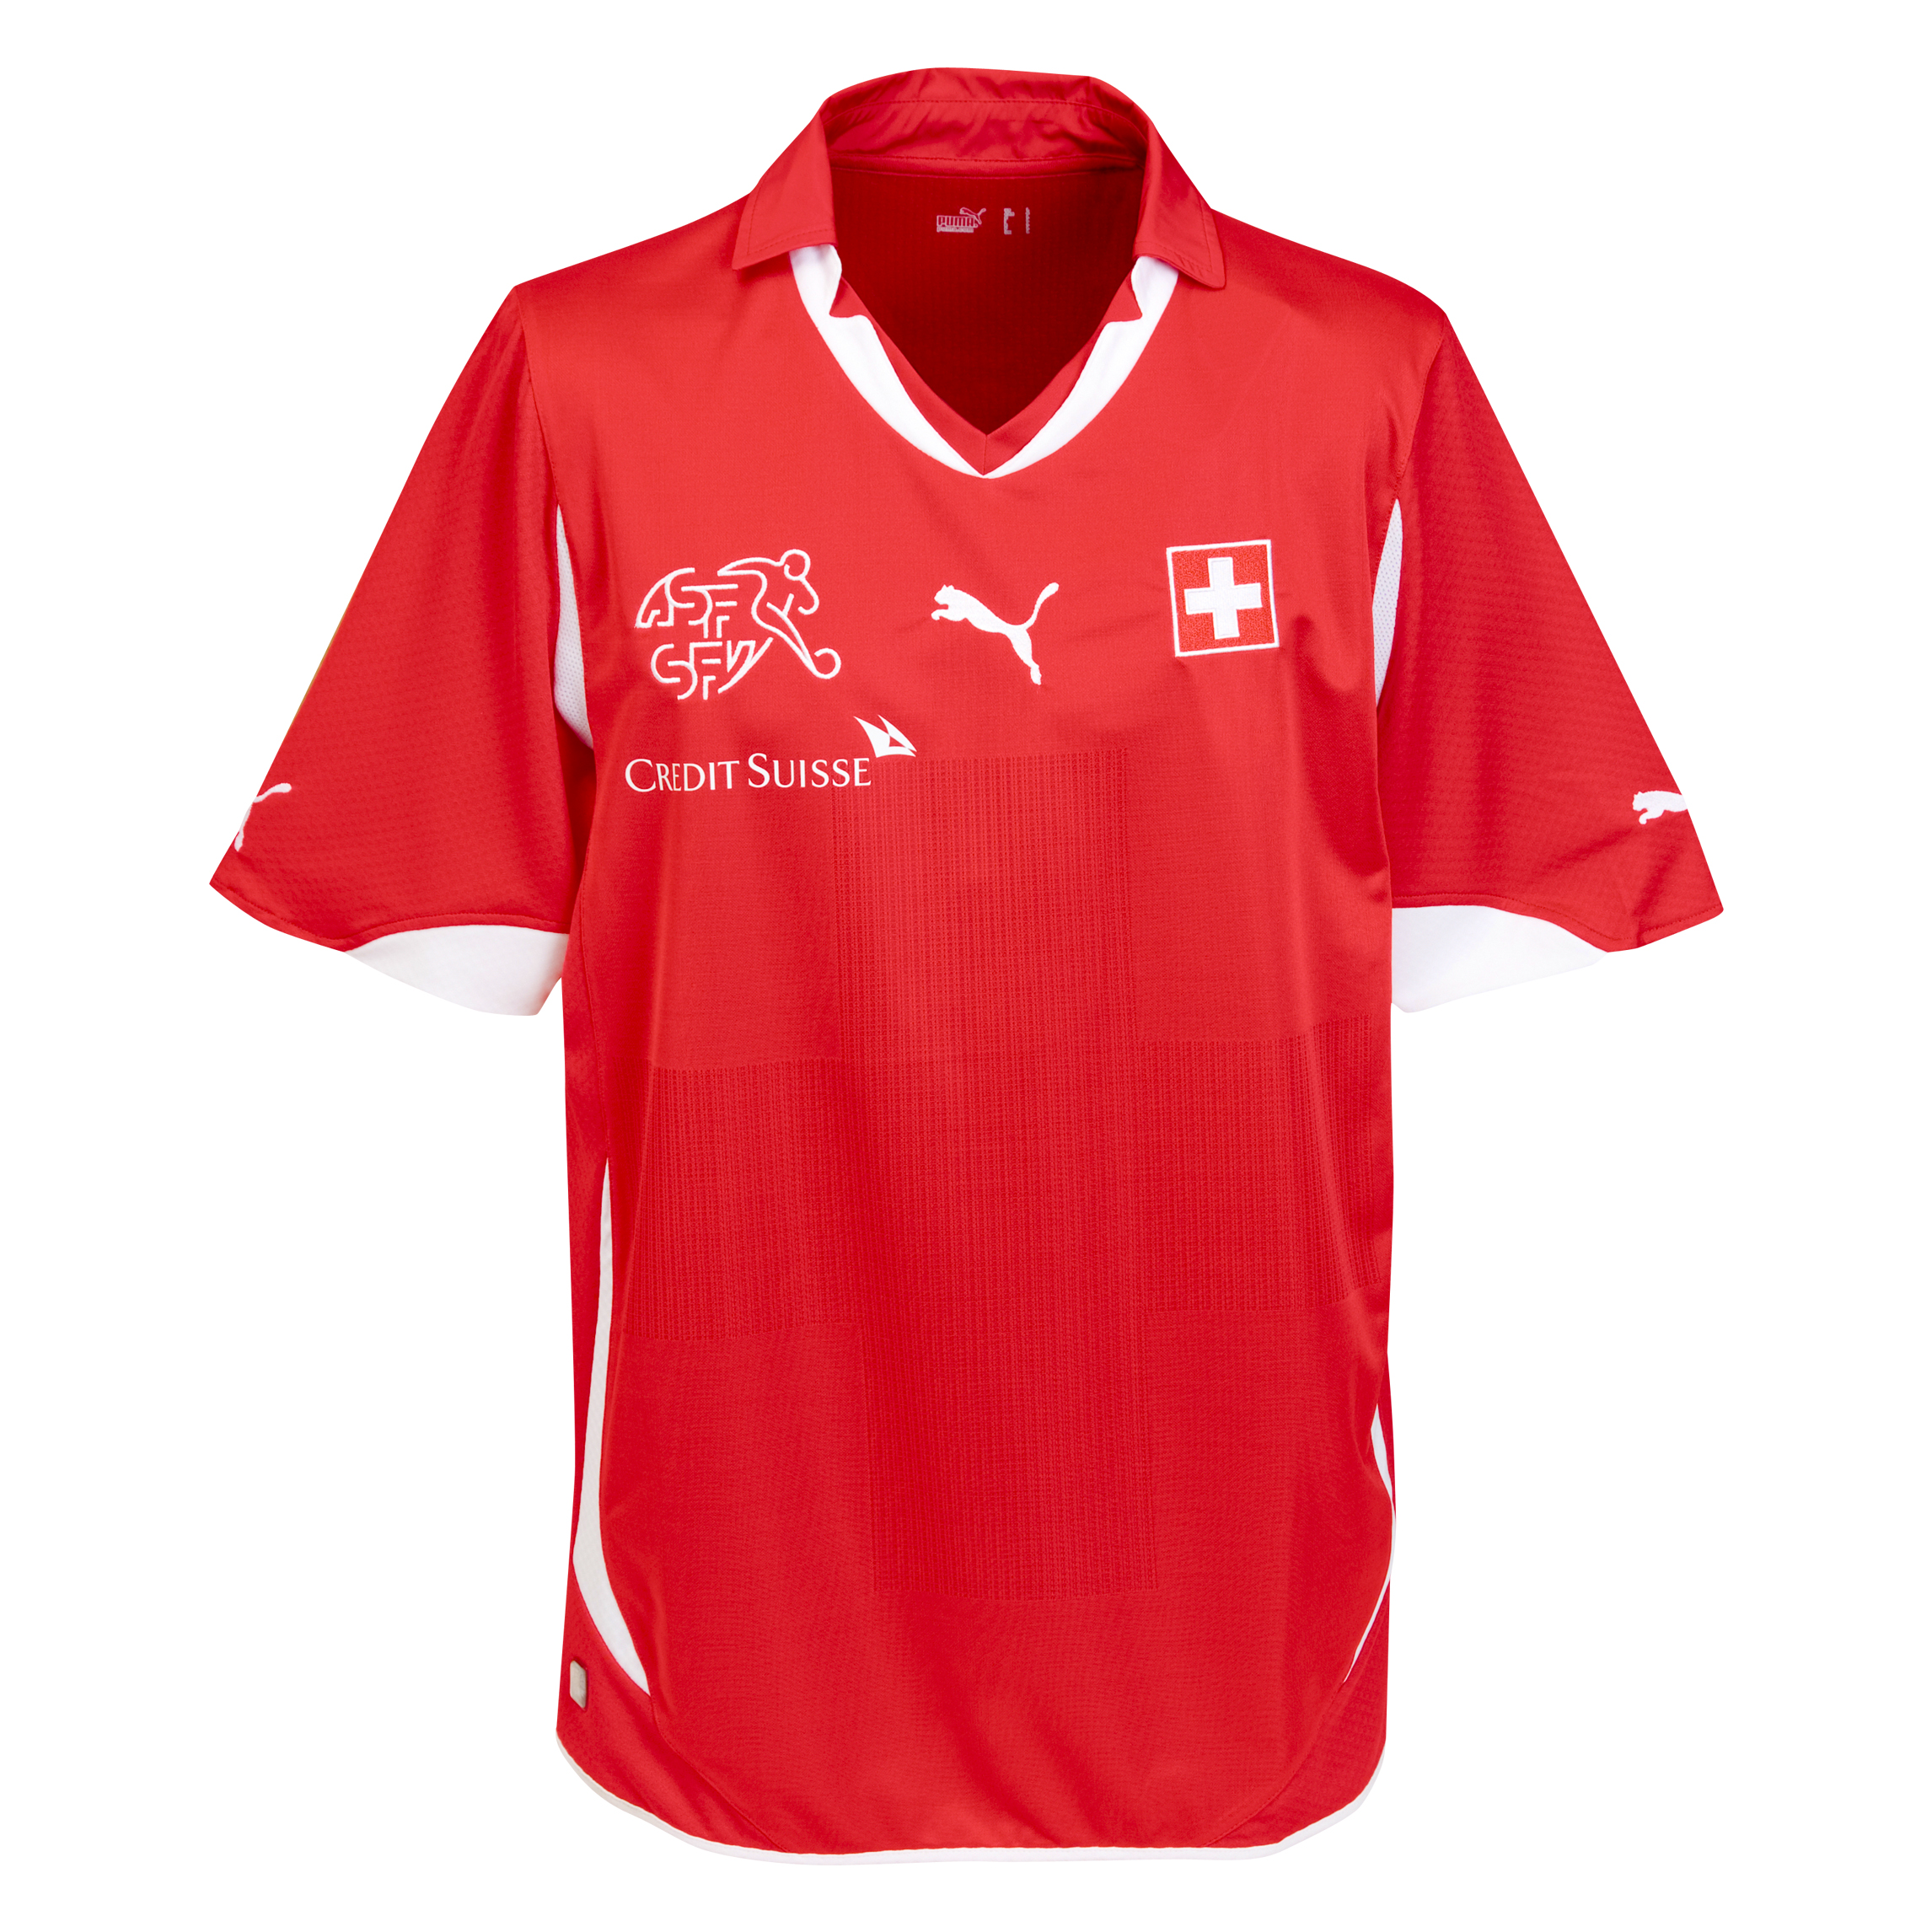 الملابس النهائيه لكأس العالم (2010) Kb-65923